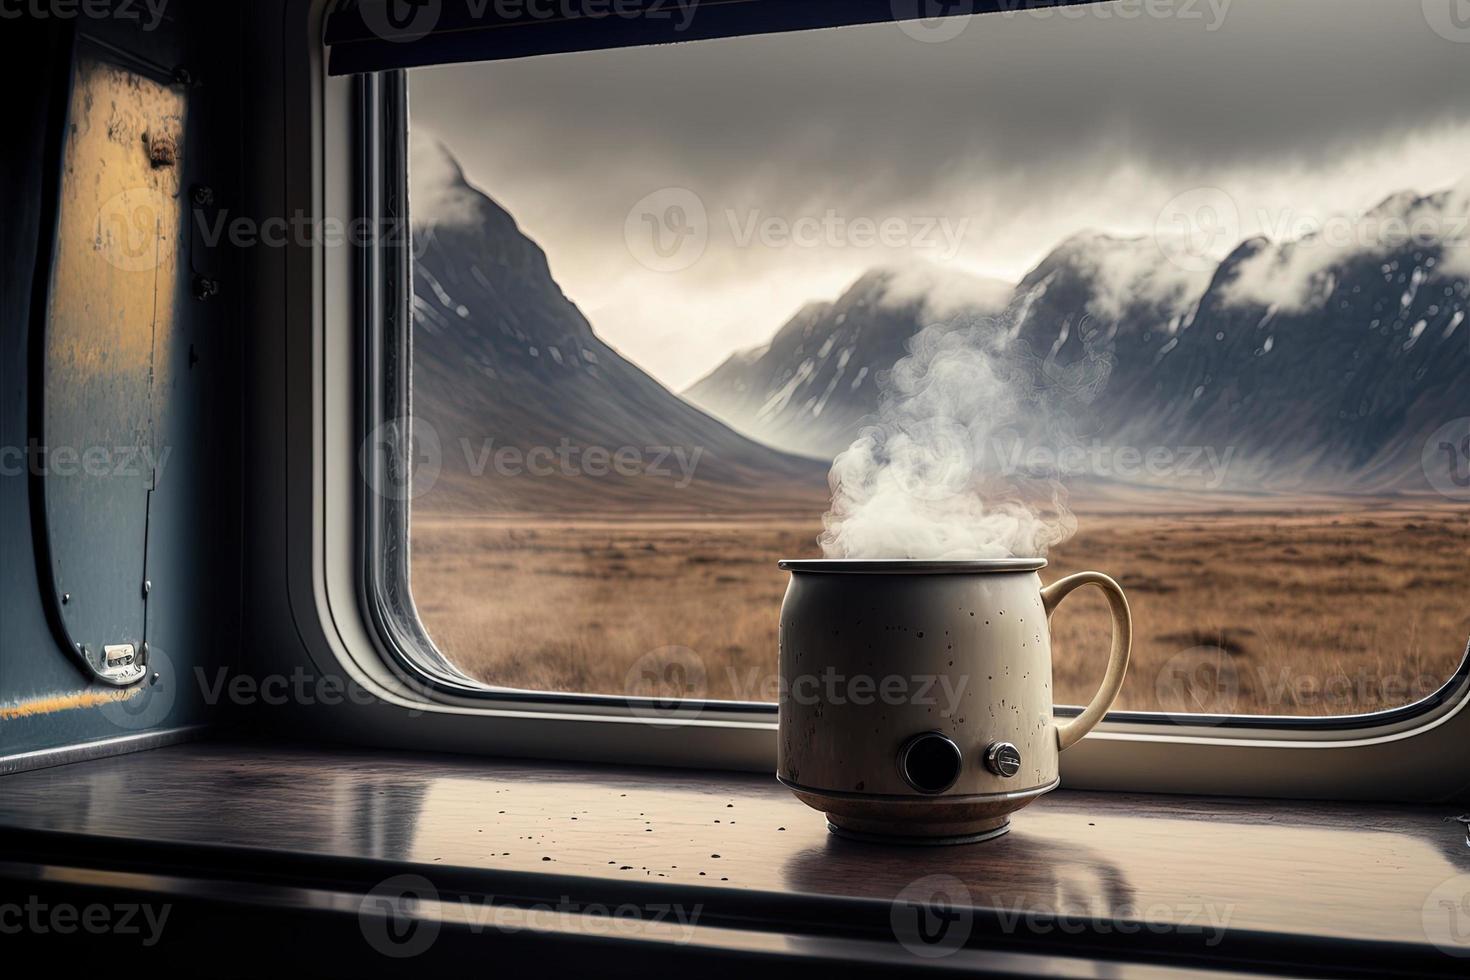 xícara fumegante de café no parapeito da janela de uma caravana - vida de van e vida lenta foto